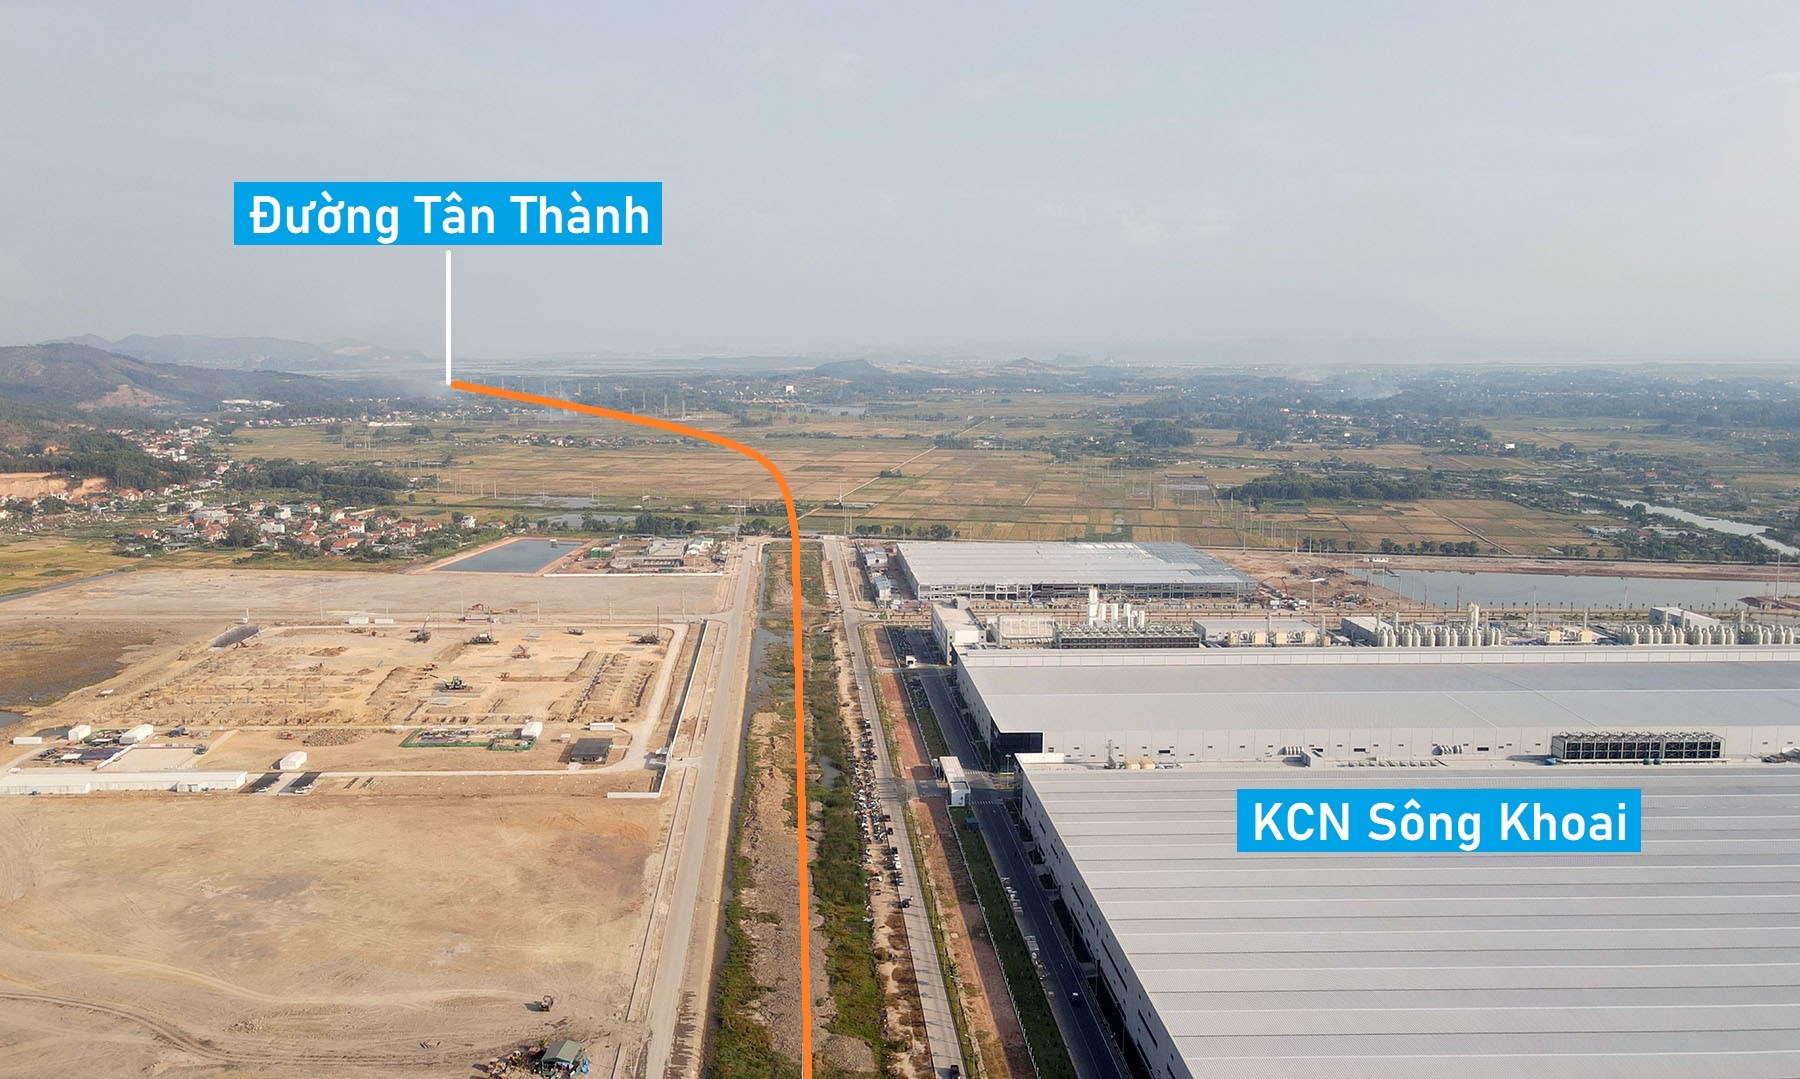 Hình ảnh đường nối cao tốc Hạ Long - Hải Phòng đến đường tỉnh 338 Quảng Ninh đang xây dựng